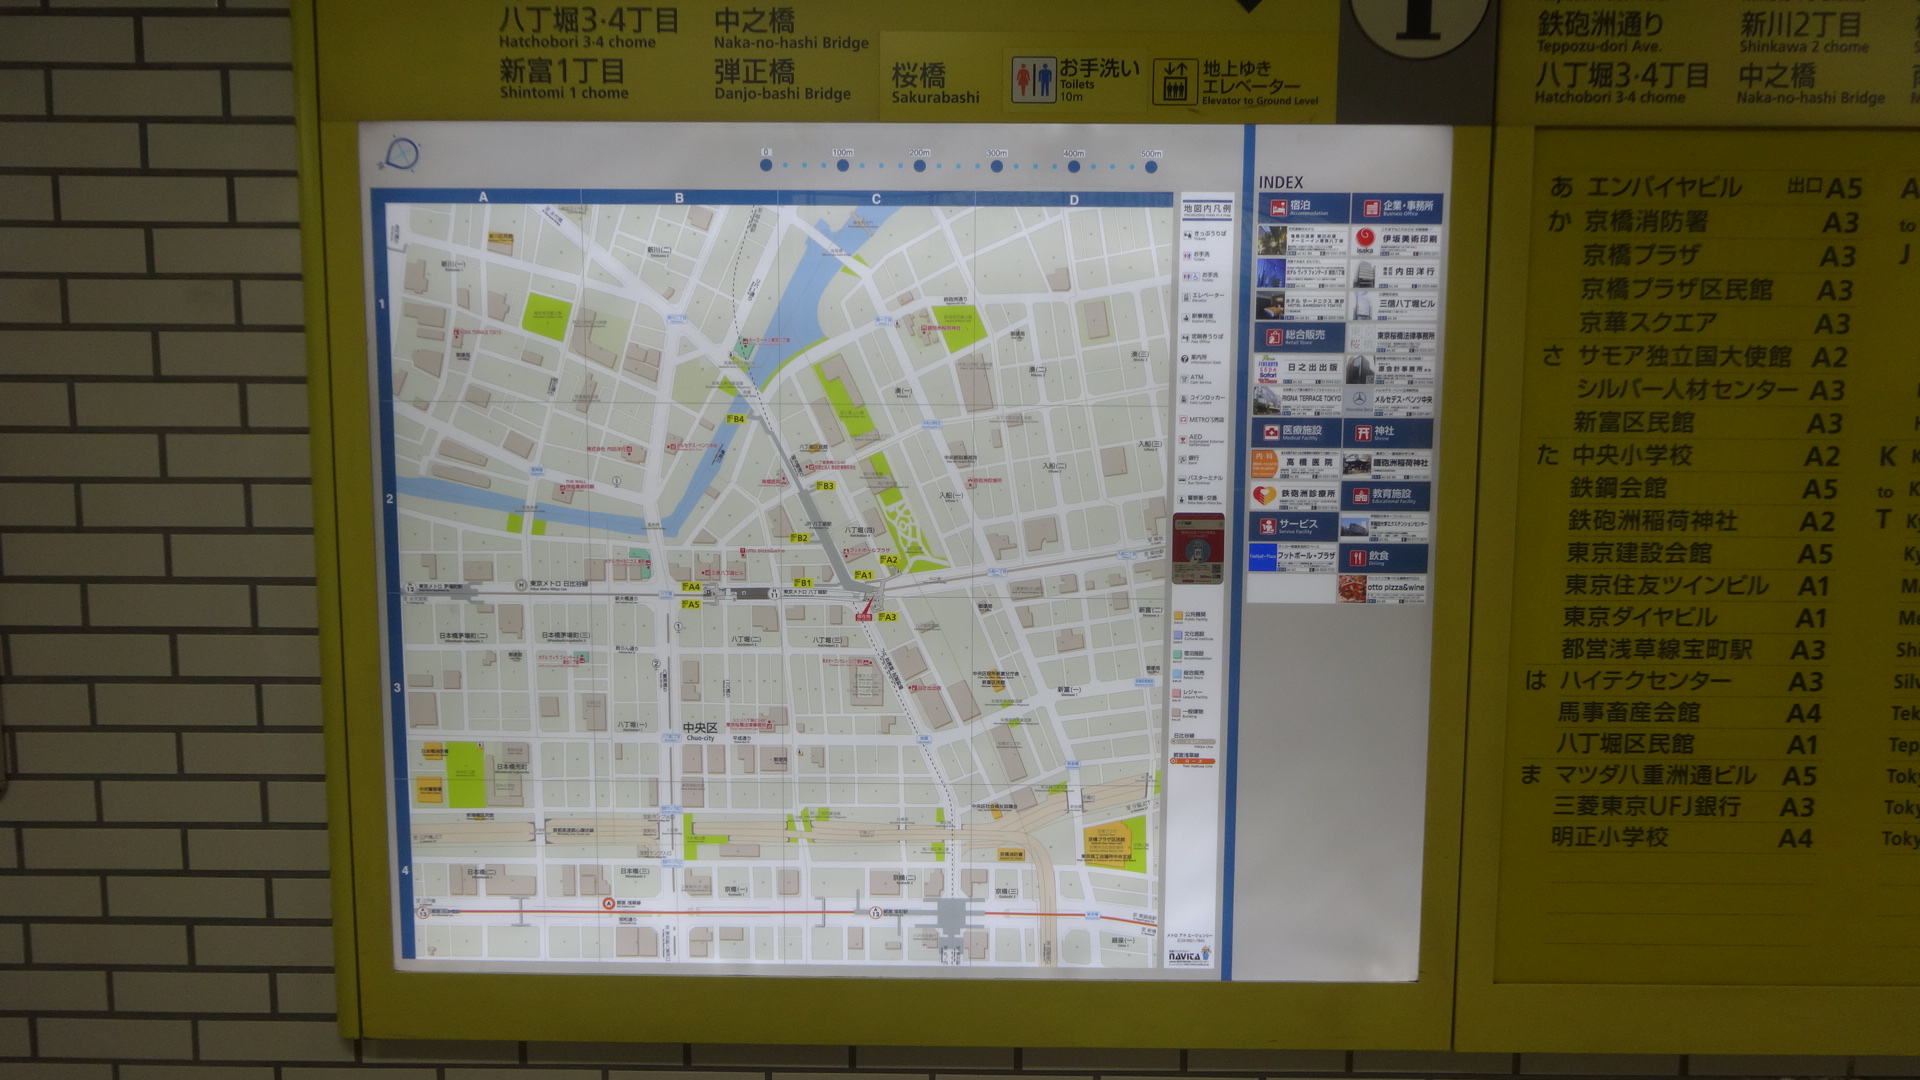 東京メトロ八丁堀駅の改札を出たところにある案内地図